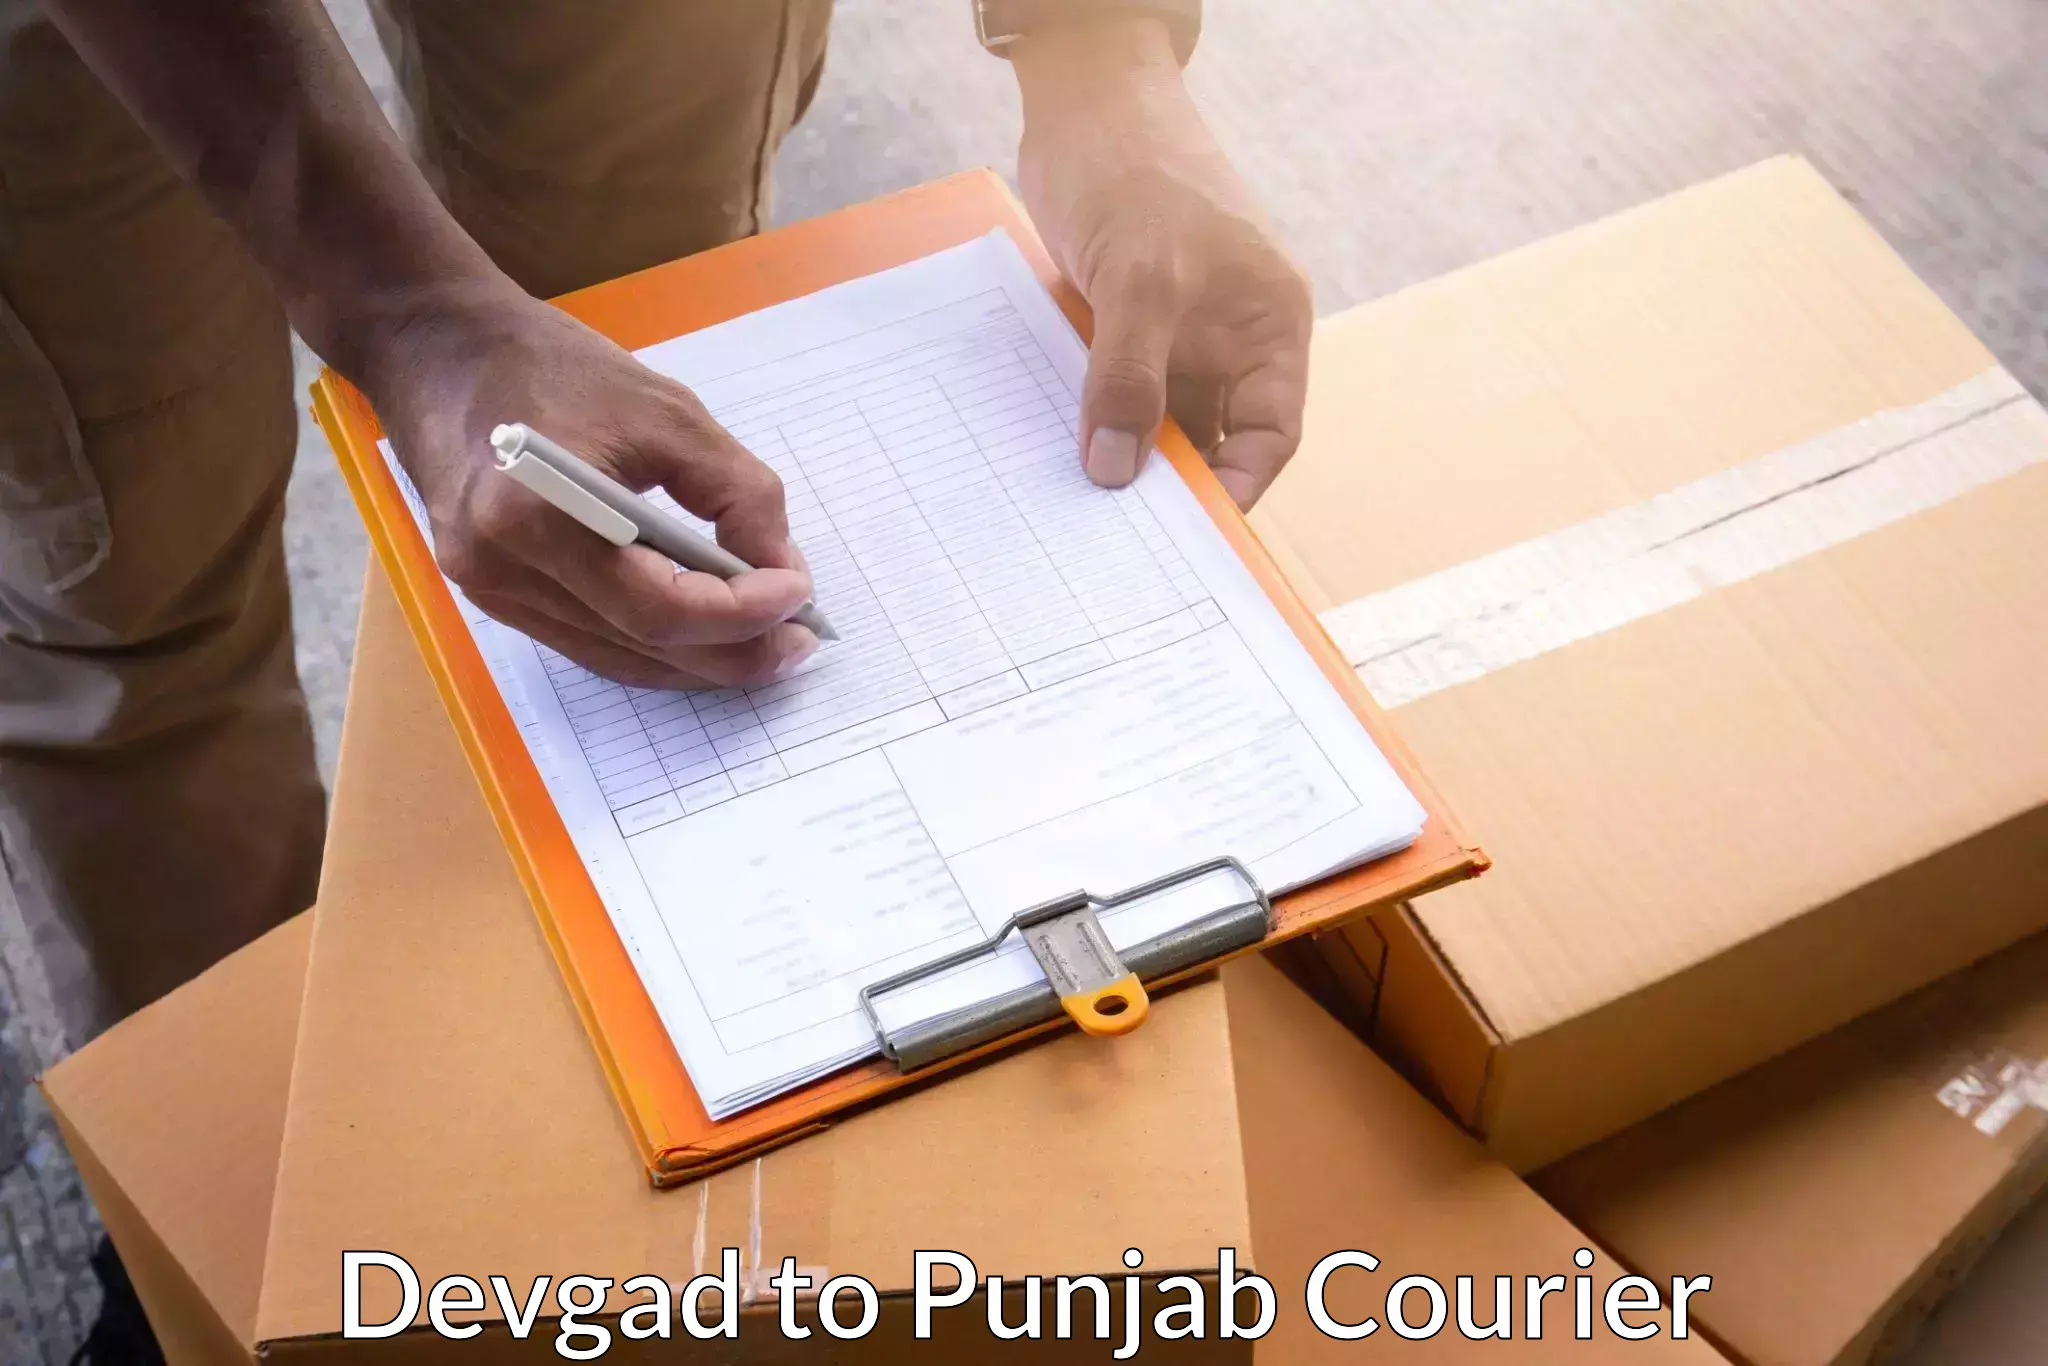 Nationwide courier service Devgad to Sirhind Fatehgarh